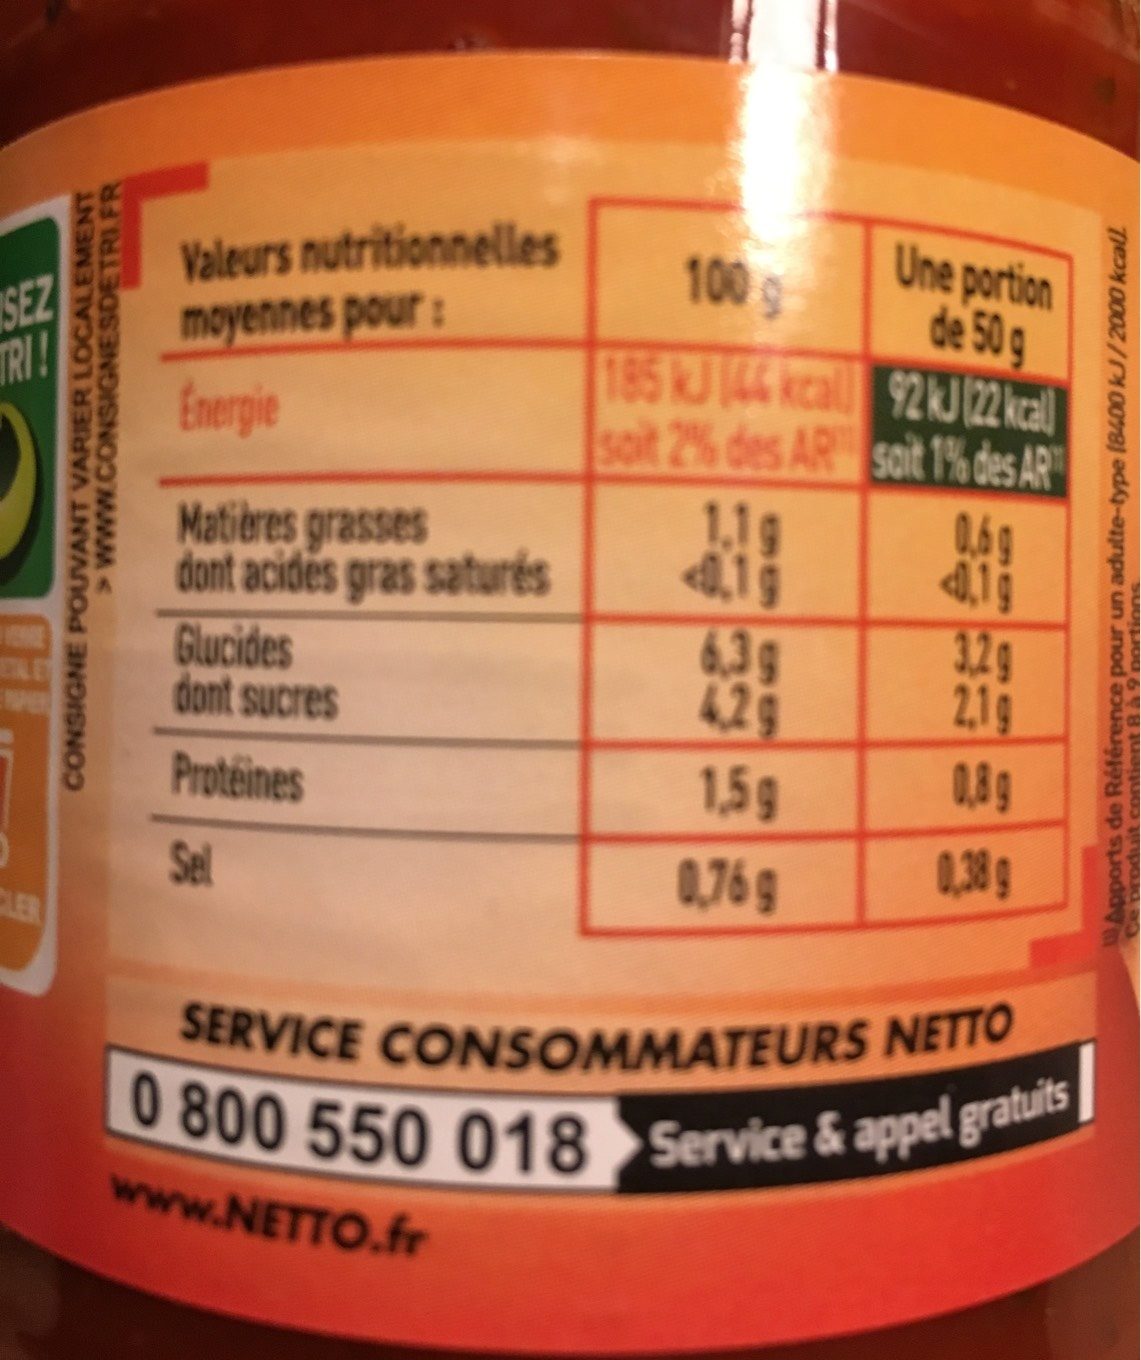 Napolitaine aux légumes cuisinés - Nutrition facts - fr